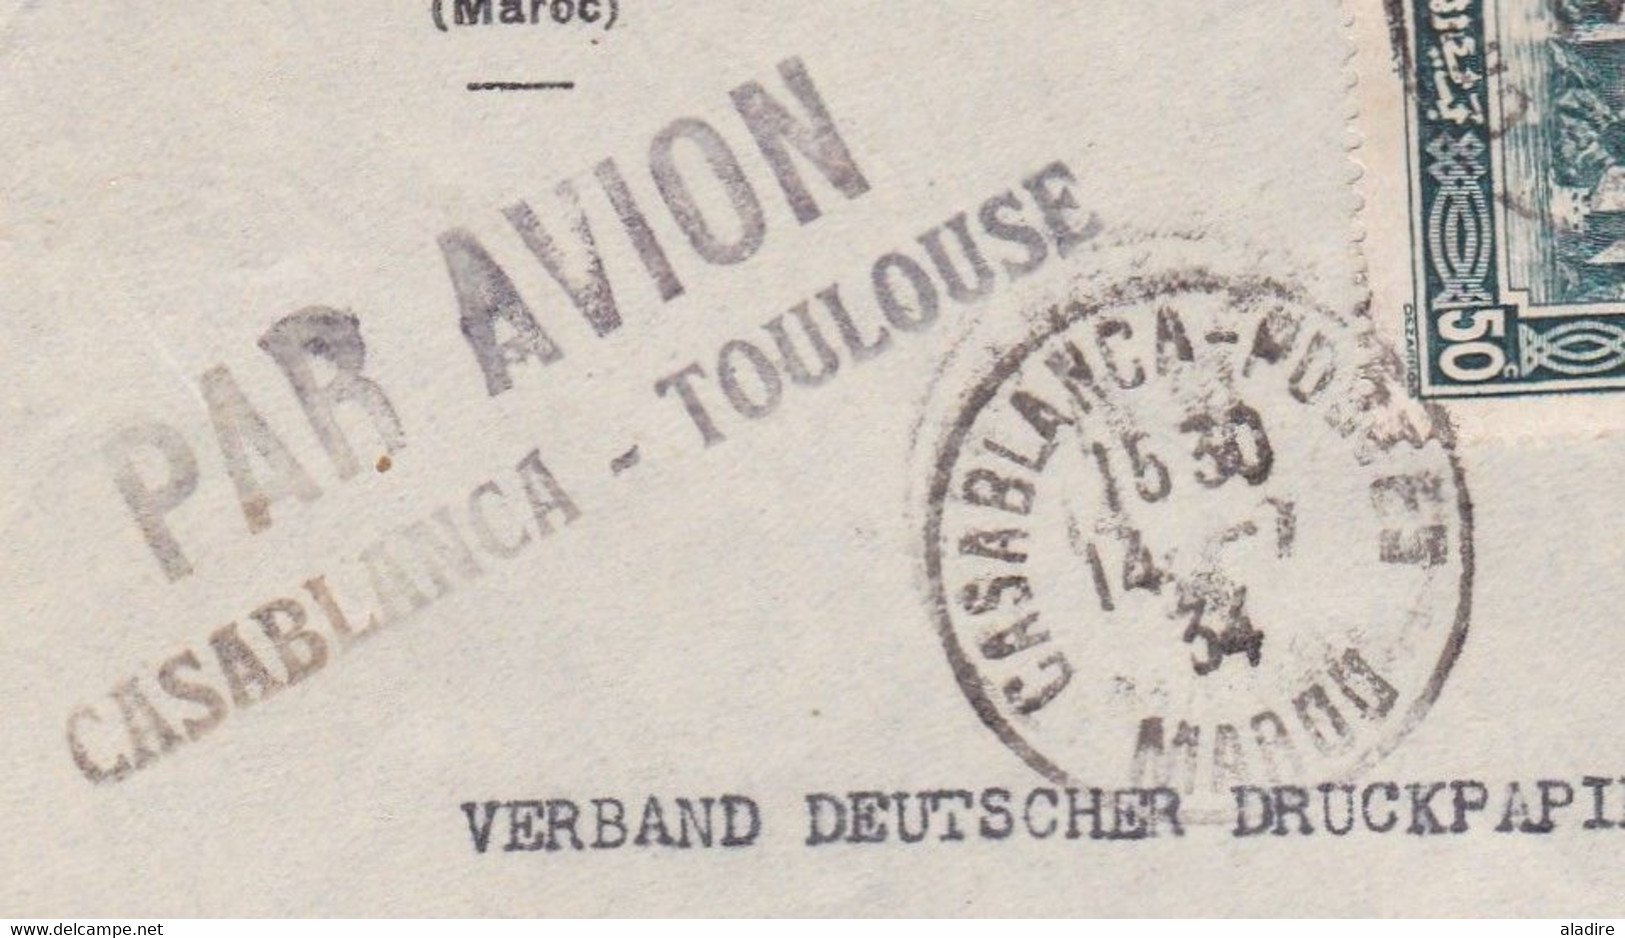 1934 - Enveloppe PAR AVION De Casablanca à Toulouse - Vers BERLIN, Allemagne - Affranchissement 3f50 - Aéreo